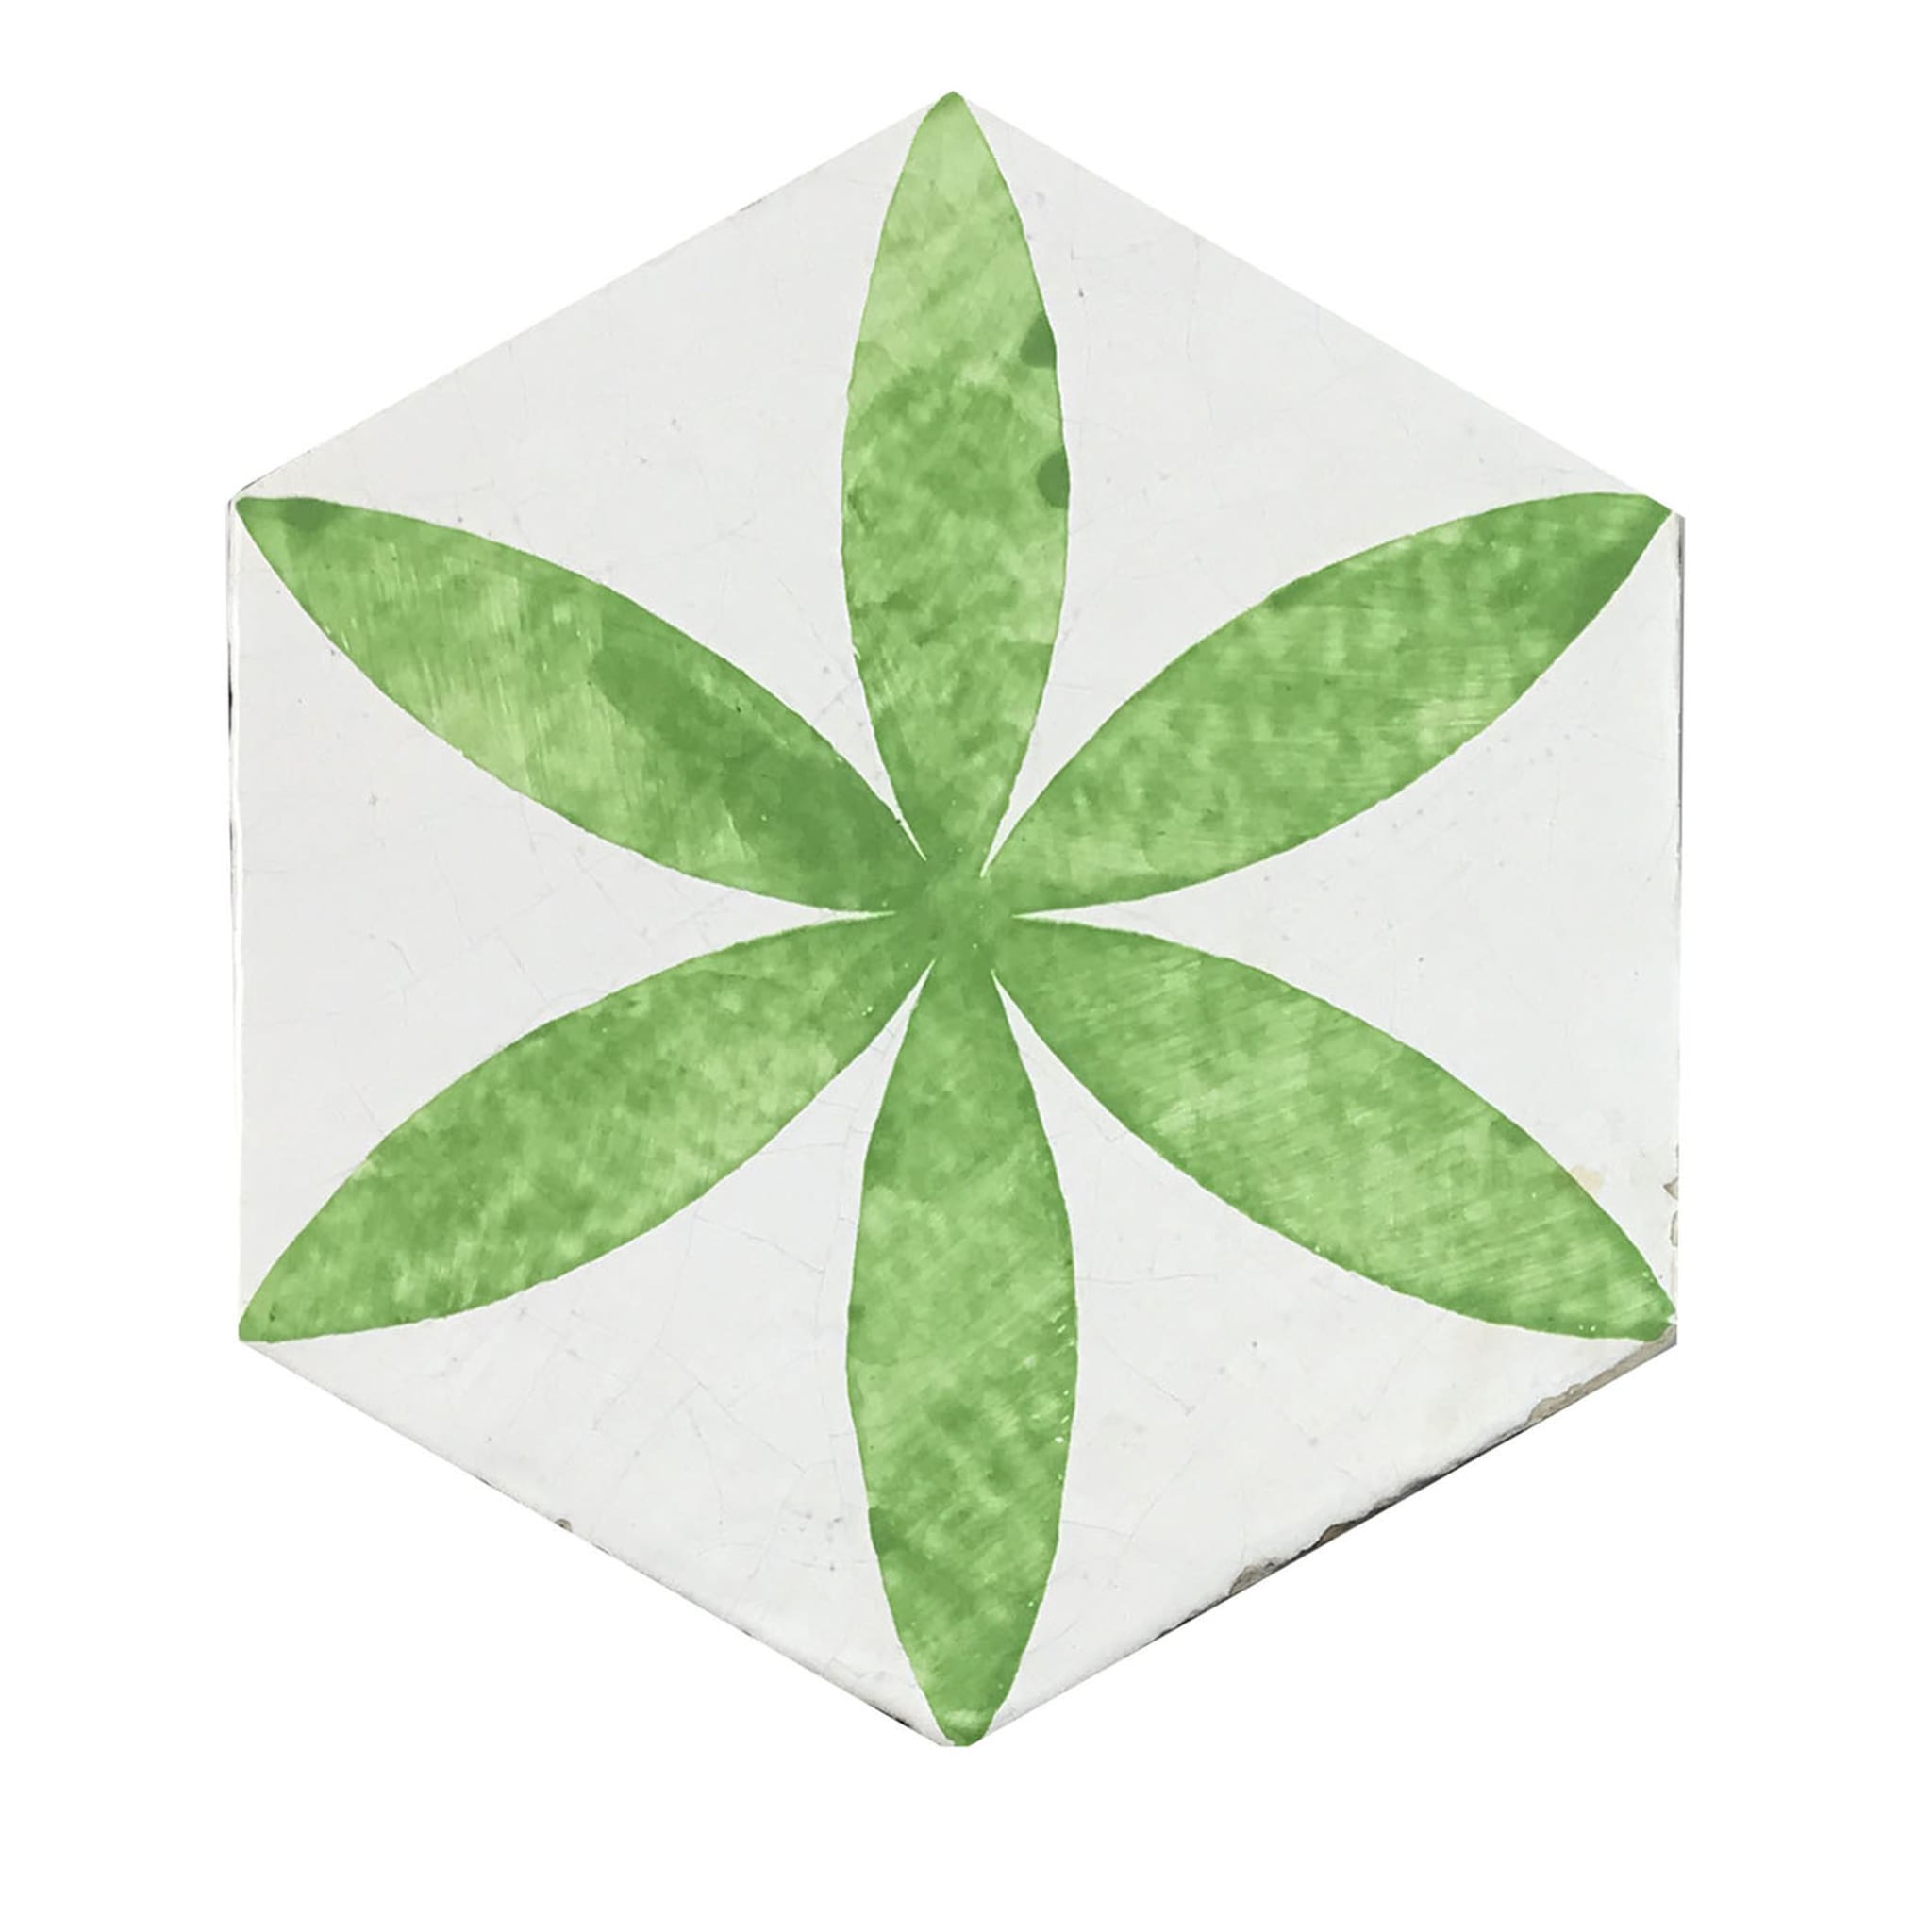 Daamè Juego de 28 baldosas hexagonales verdes nº 1 - Vista principal